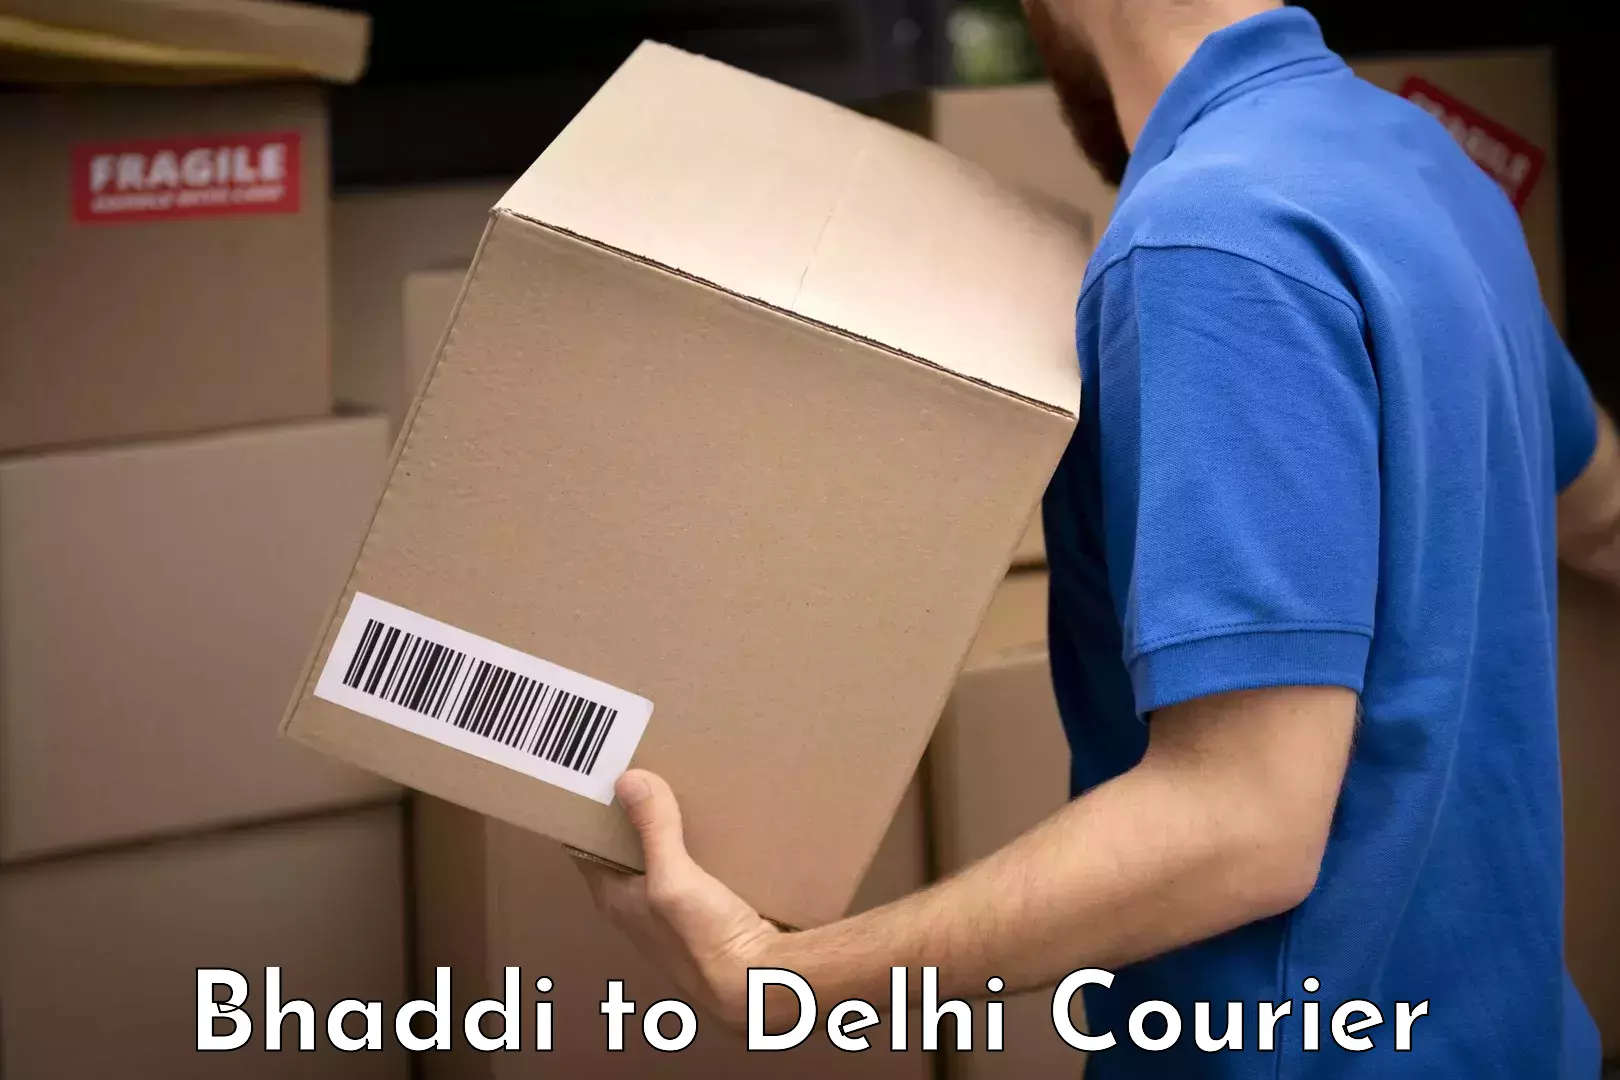 Luggage shipment specialists Bhaddi to East Delhi